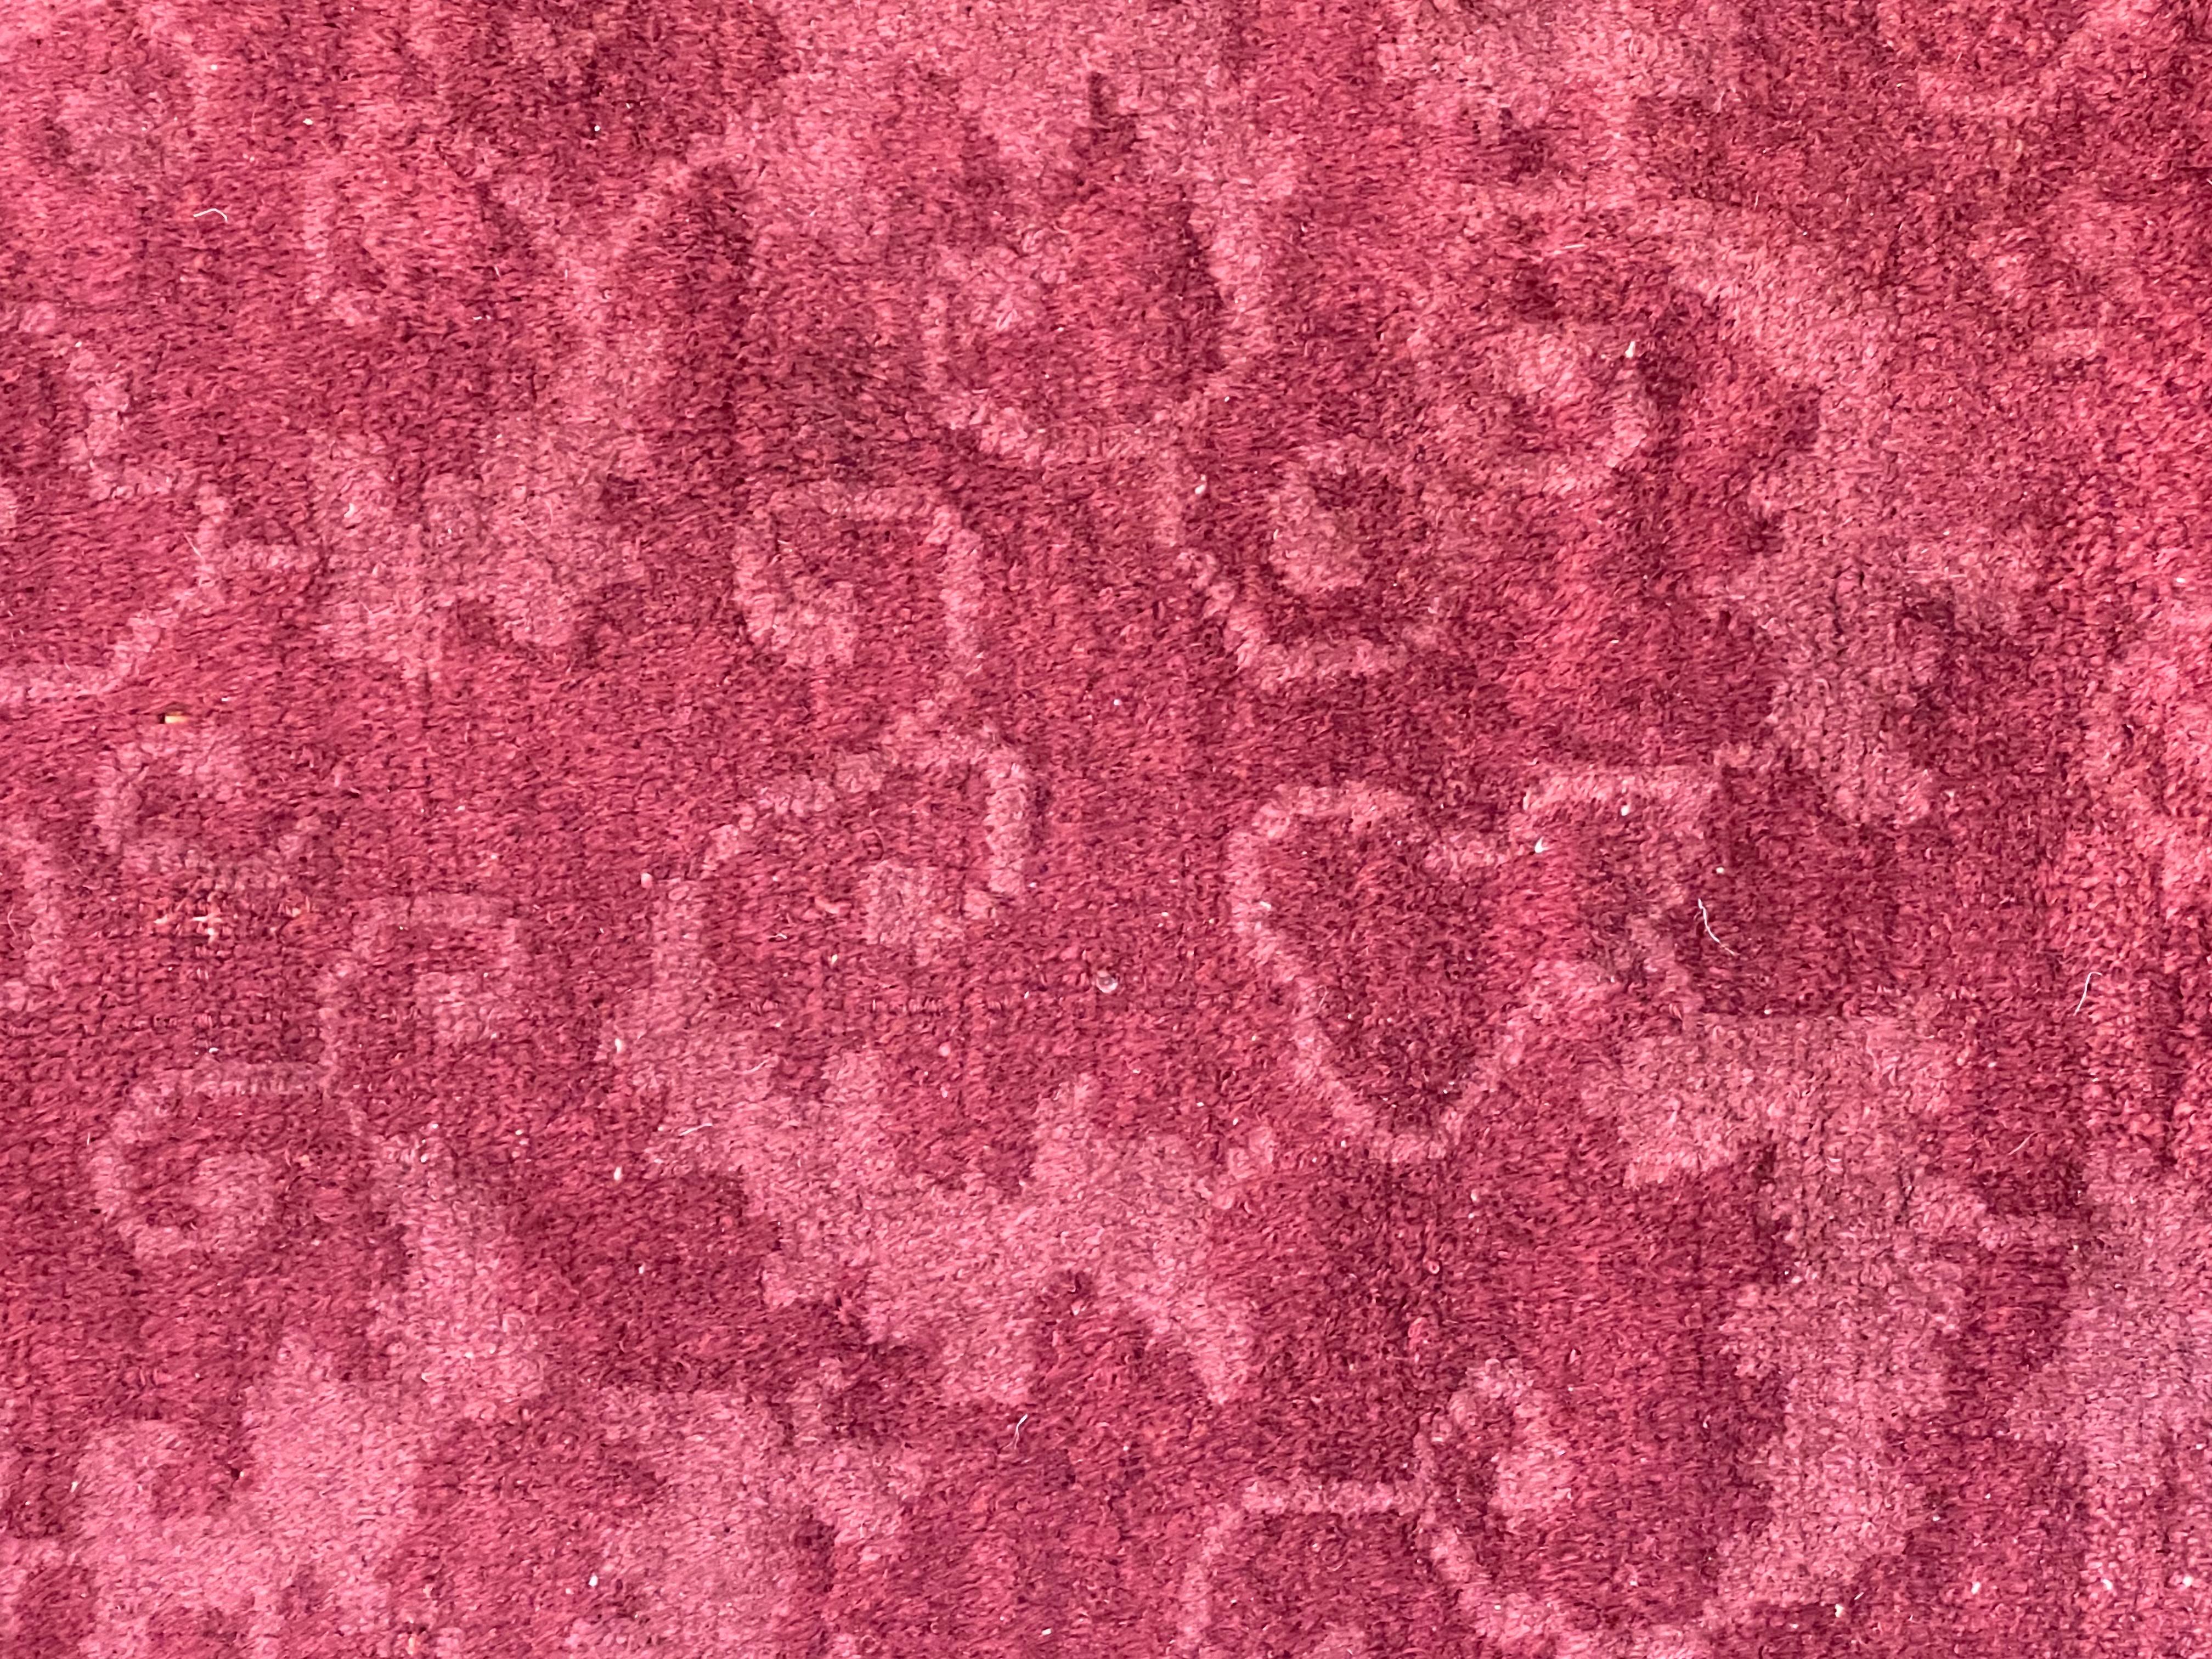 Ein antiker chinesischer Teppich aus Pekino, der in seiner Dekoration und seinen Farben ganz im Zeichen des Jugendstils steht, der die Erneuerung des Einrichtungsgeschmacks zwischen dem Ende des 19. und den ersten Jahrzehnten des 20. 
Der Jugendstil